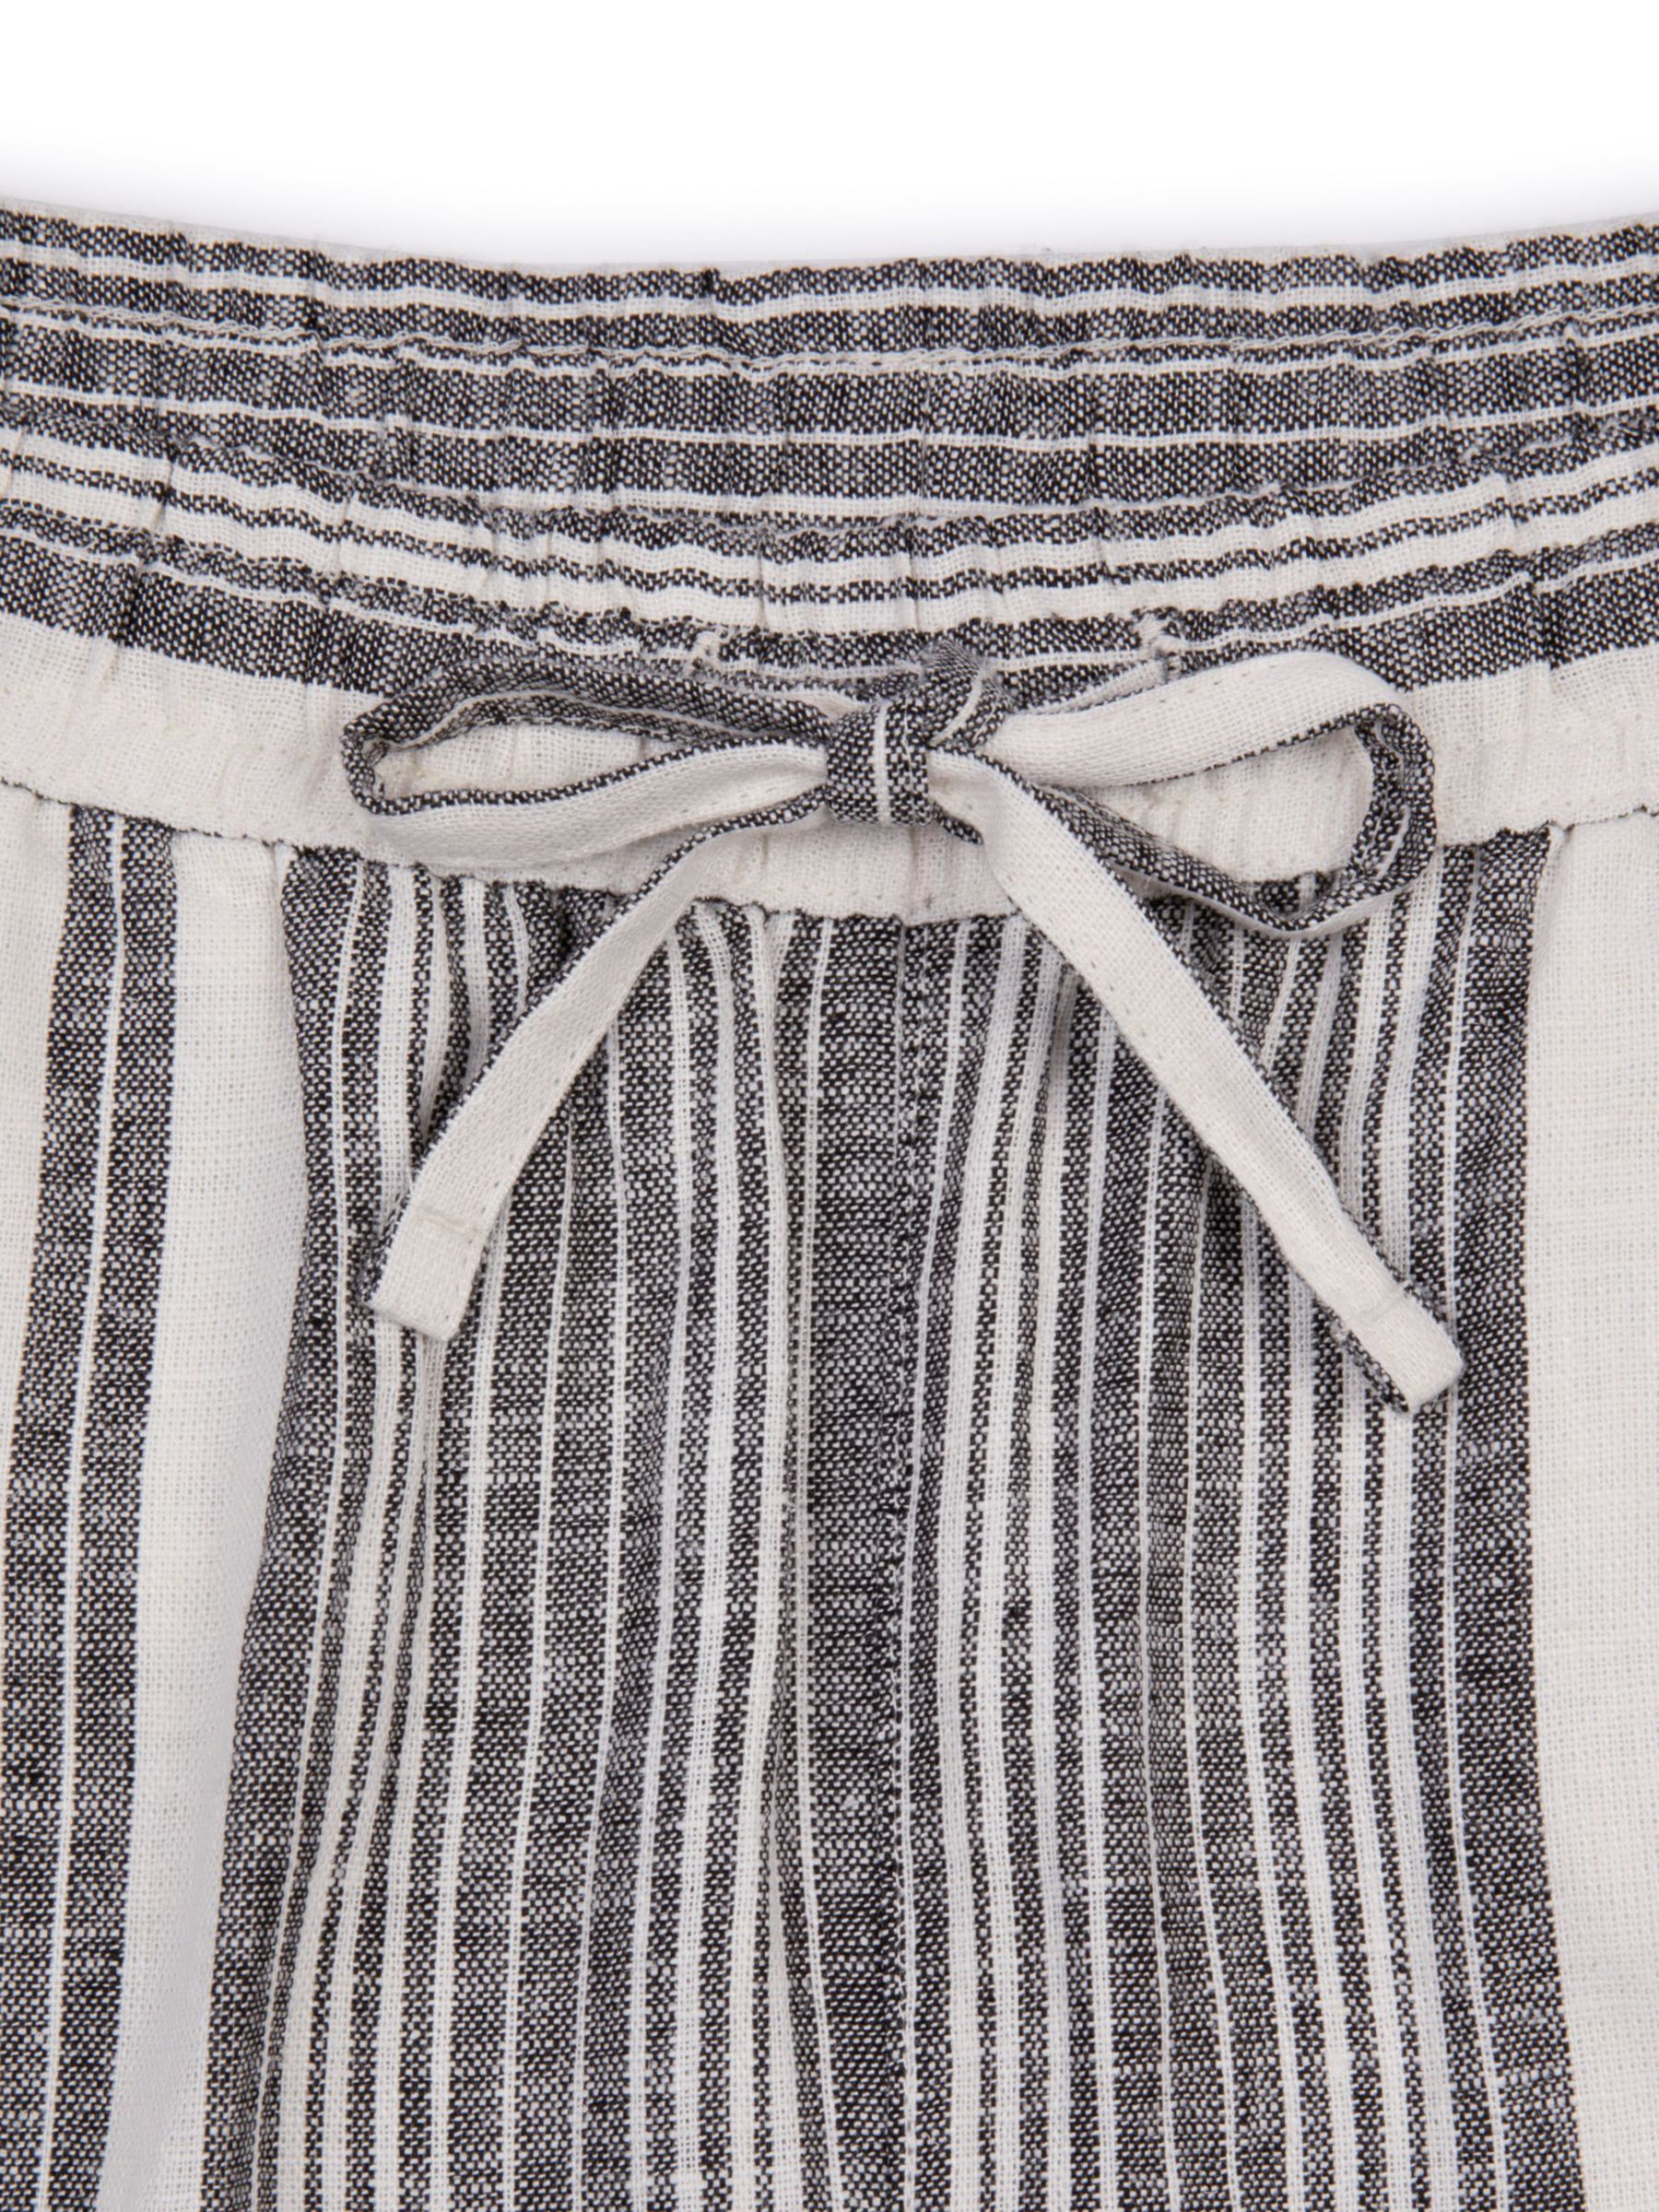 Buy Chelsea Peers Linen Blend Stripe Shorts, White/Multi Online at johnlewis.com